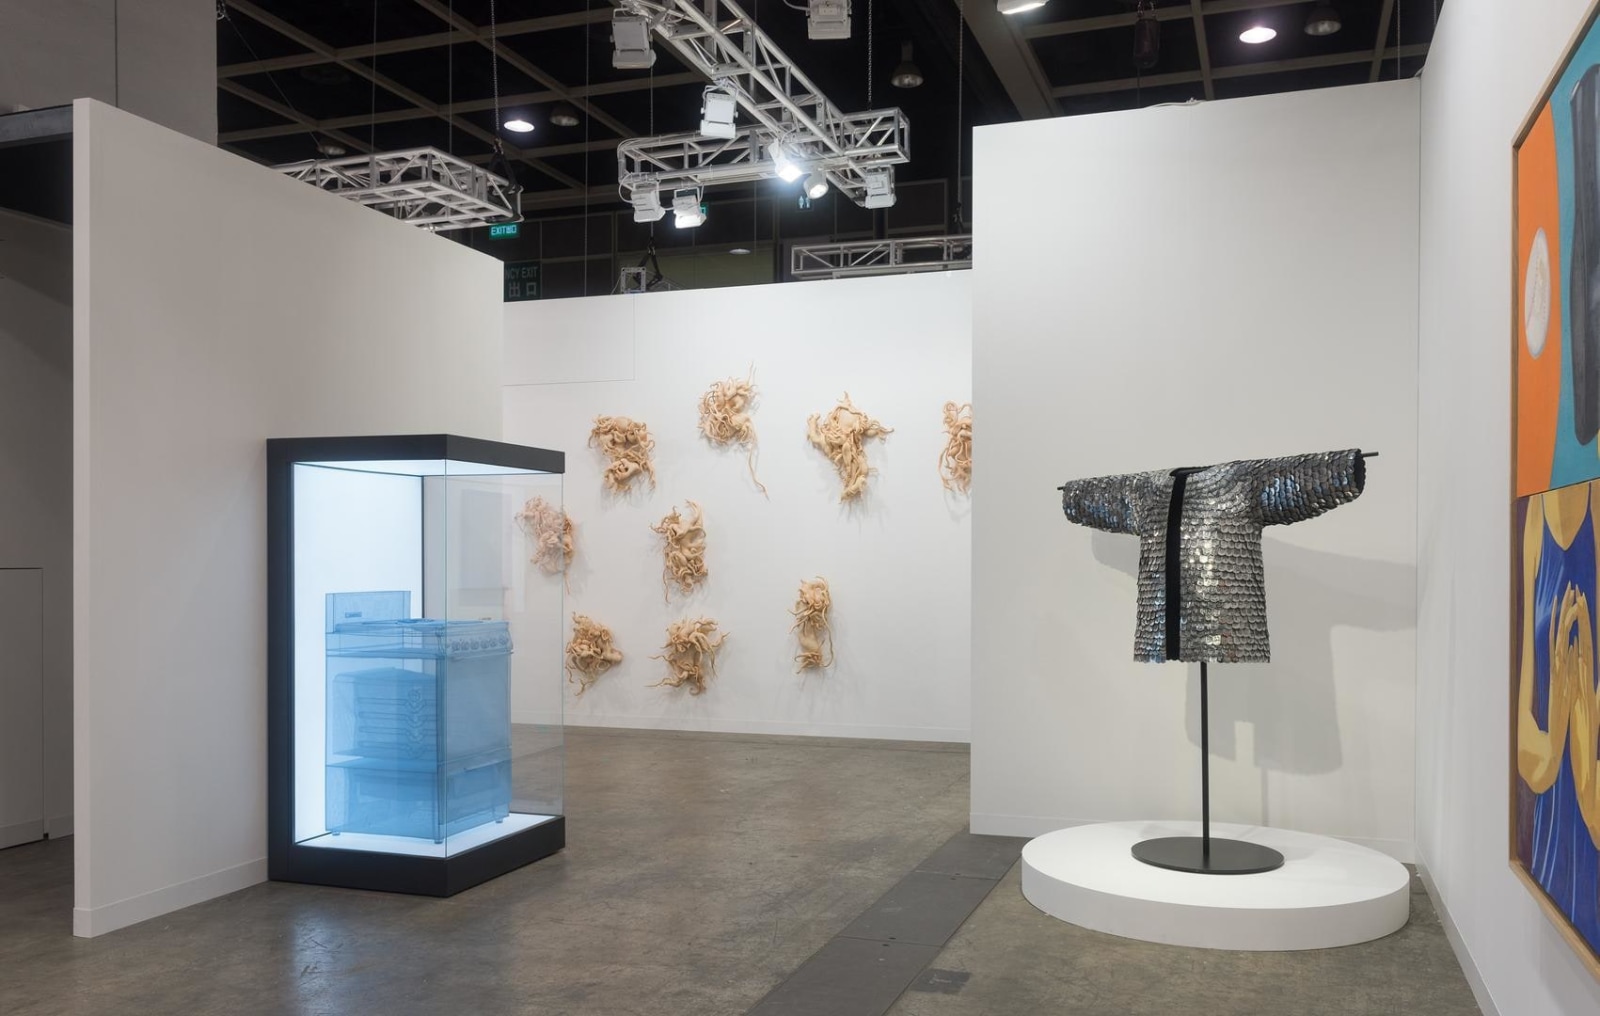  Installation view, Booth 1C14, Art Basel Hong Kong 2016